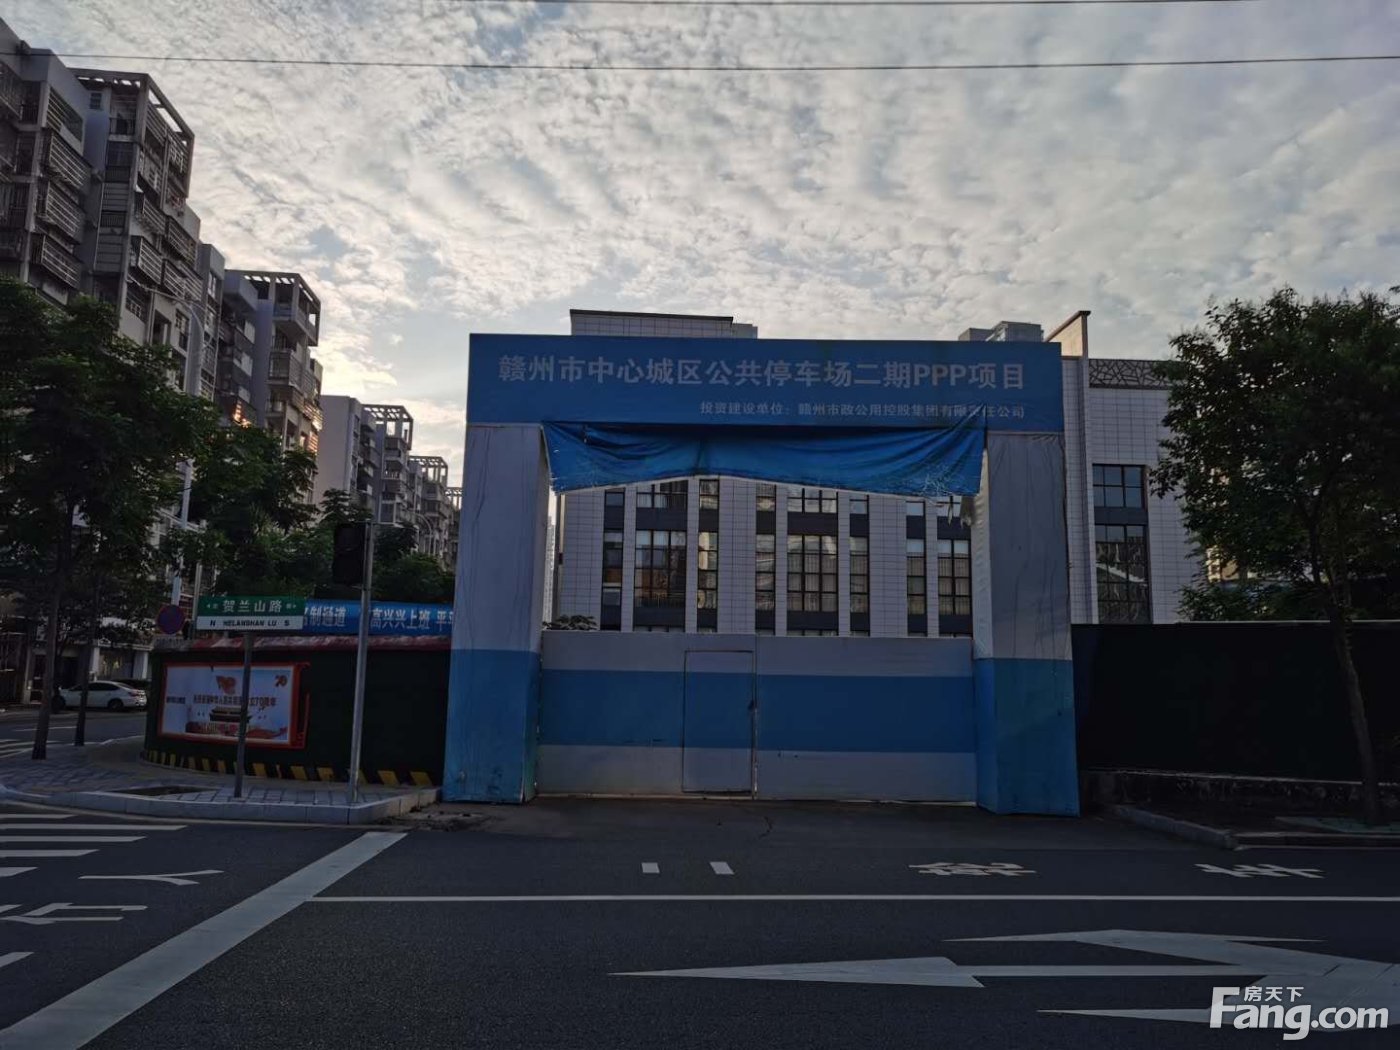 章江新区H23地块规划为地面建设公园，地下建设公共停车场